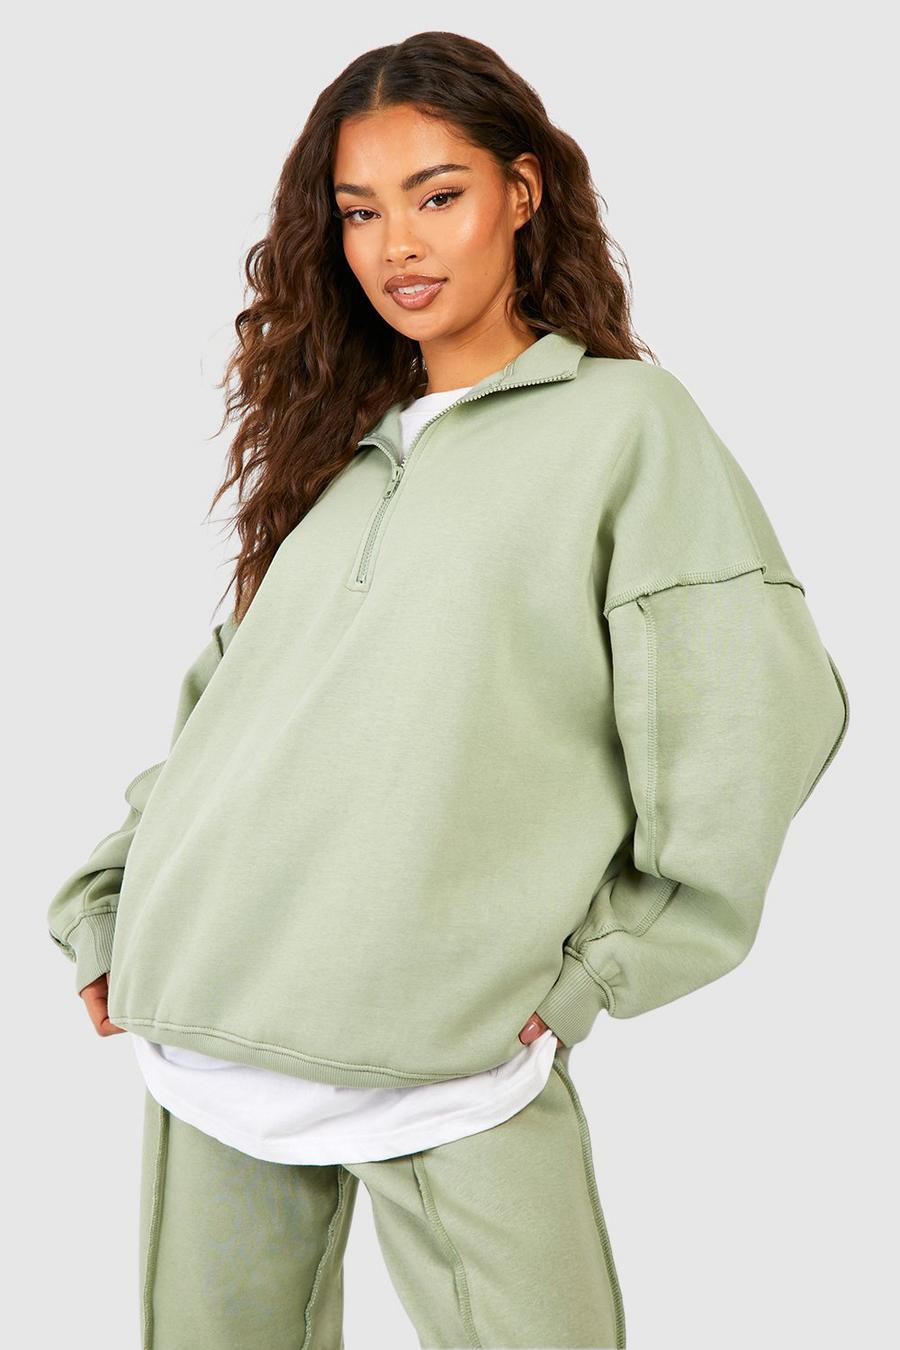 Sweatshirts For Women, Oversized Sweatshirts